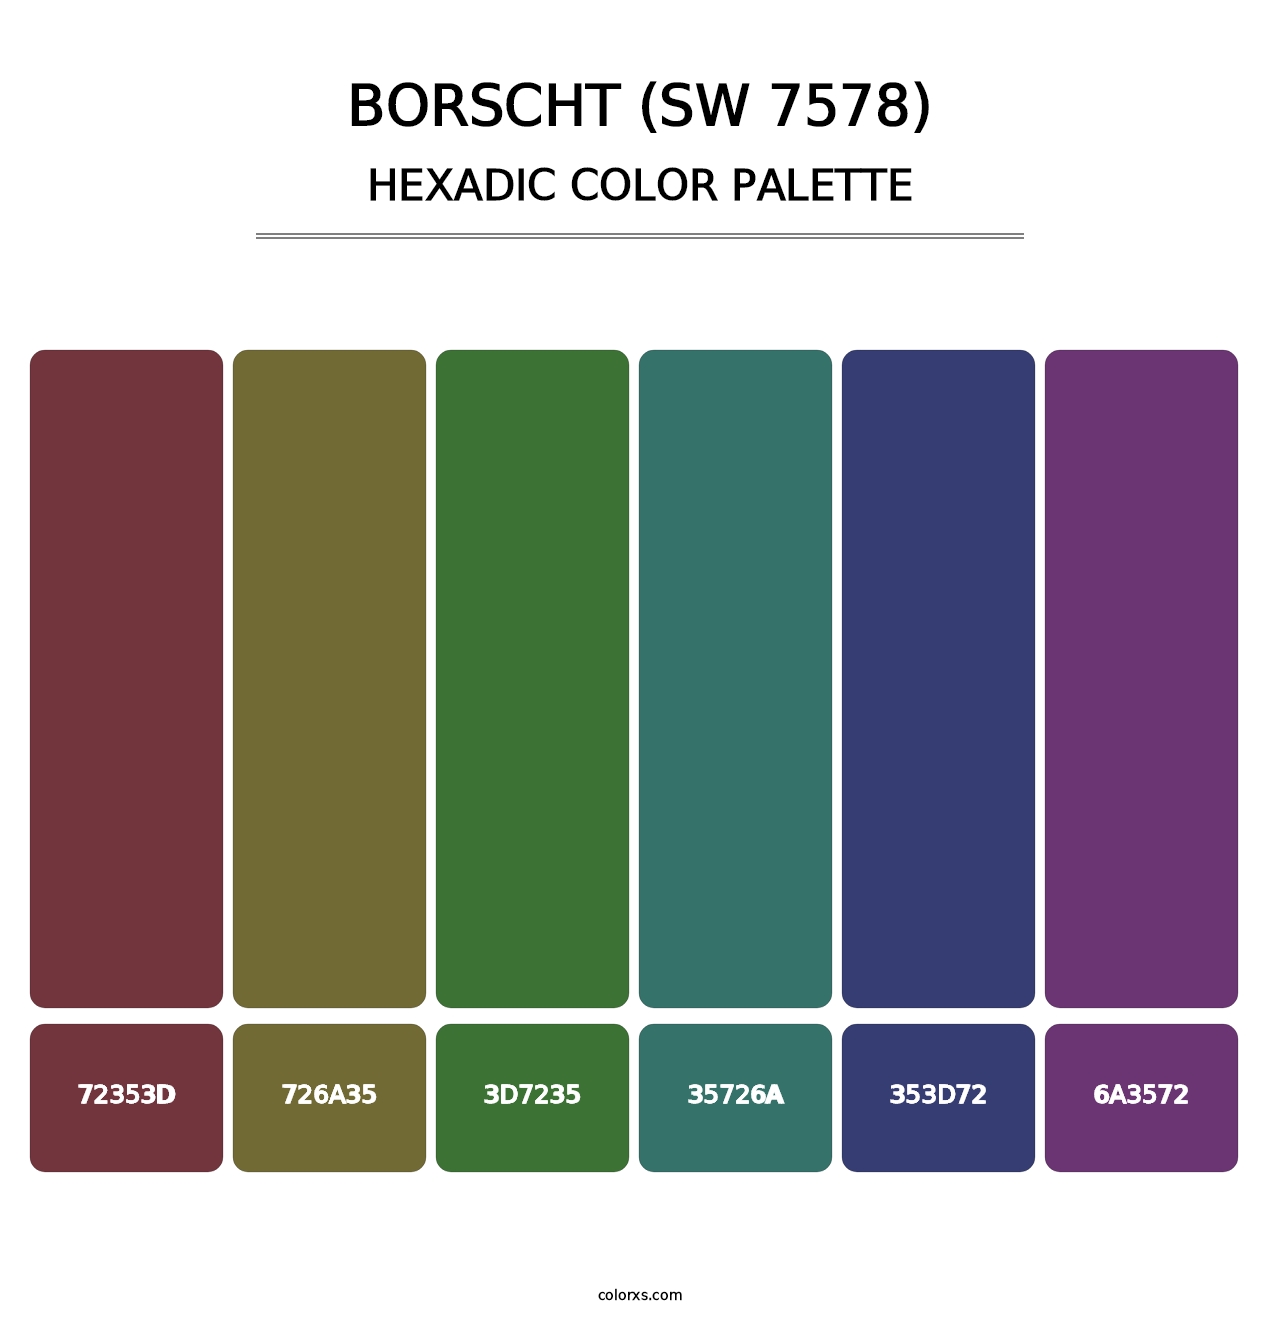 Borscht (SW 7578) - Hexadic Color Palette